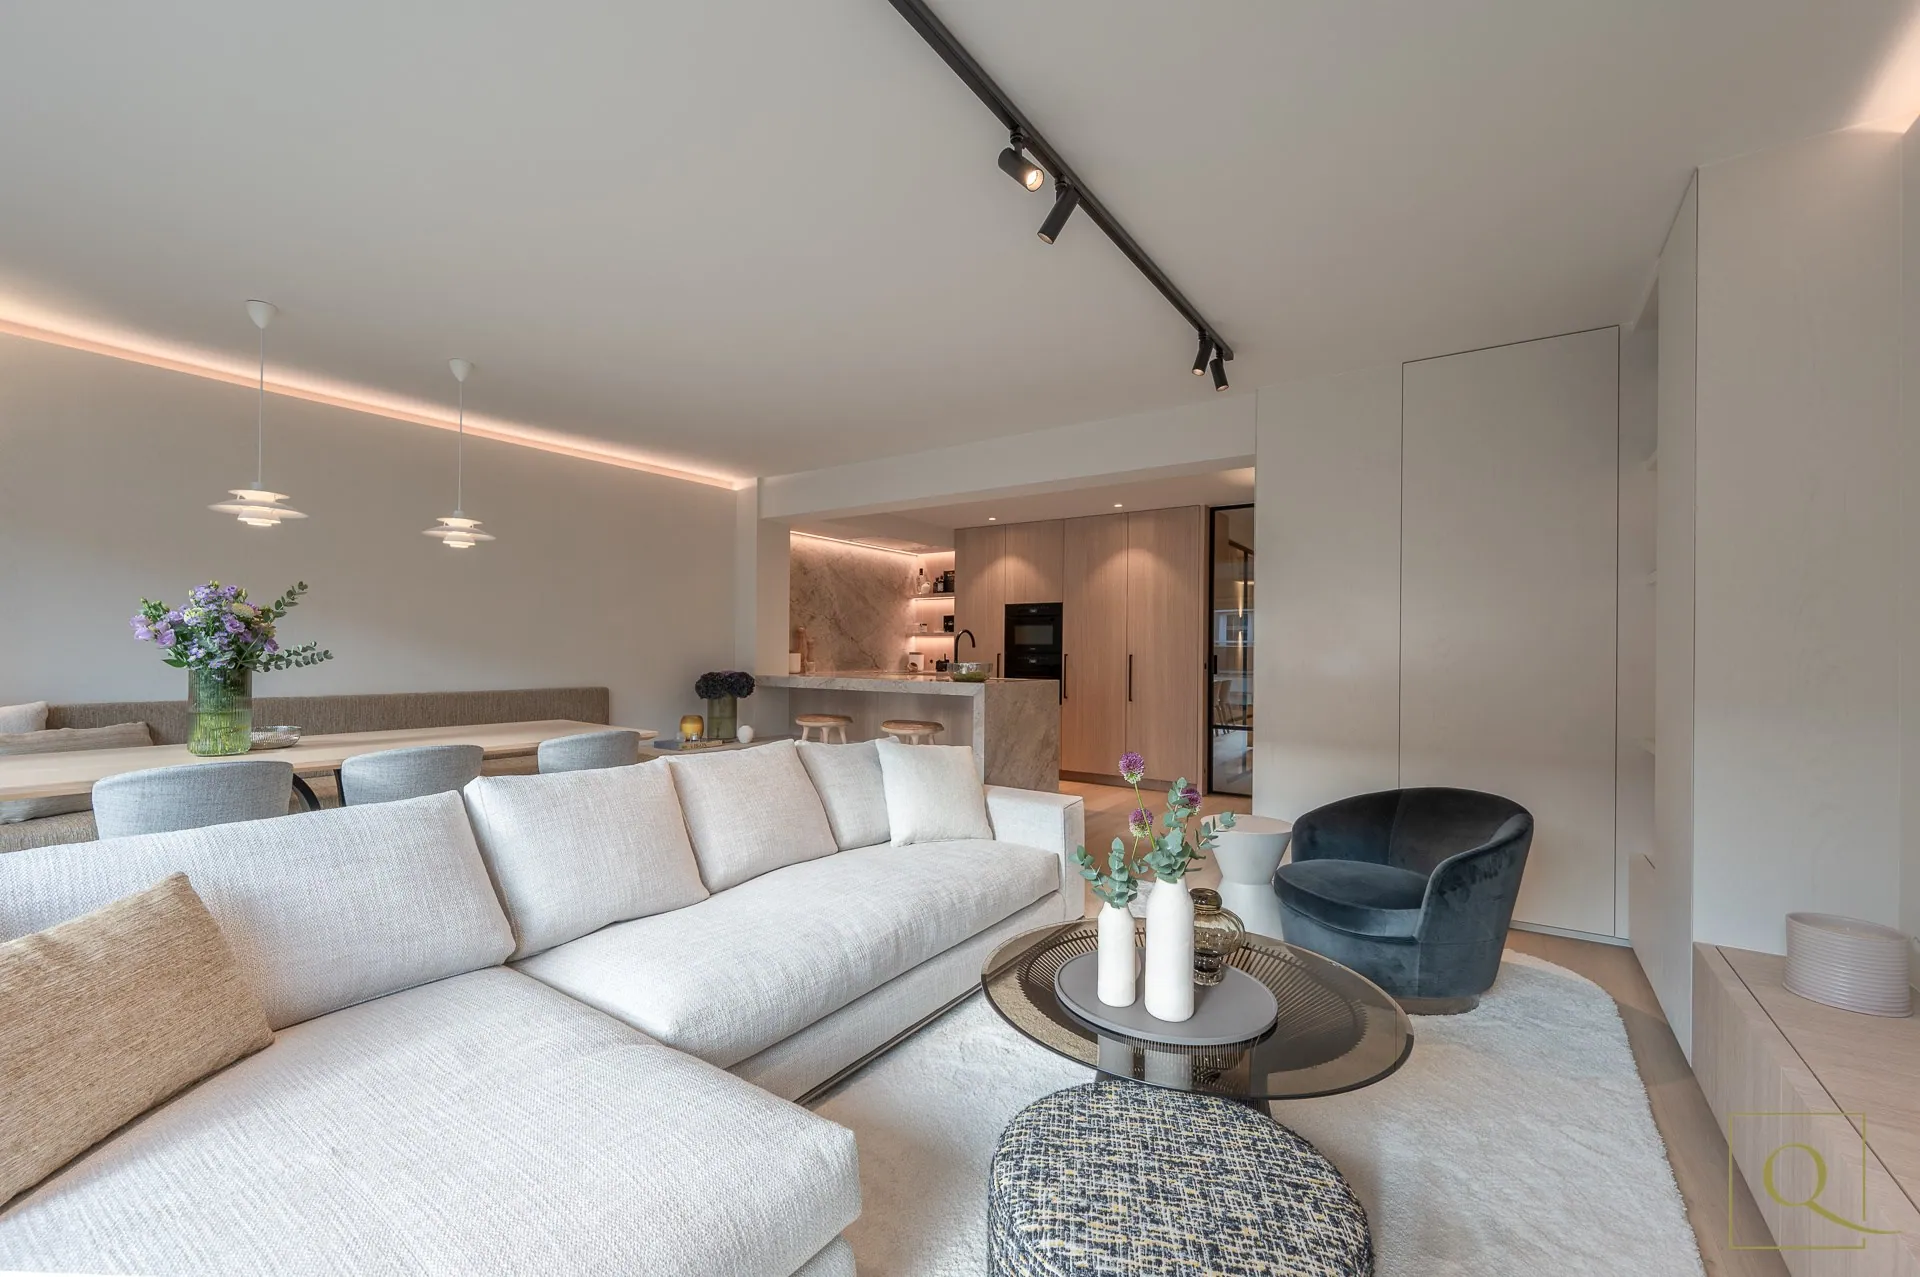 Appartement exceptionnellement rénové avec trois chambres à coucher de taille normale, situé dans une position idéale dans une rue adjacente à l'avenue Dumortier à Knokke.